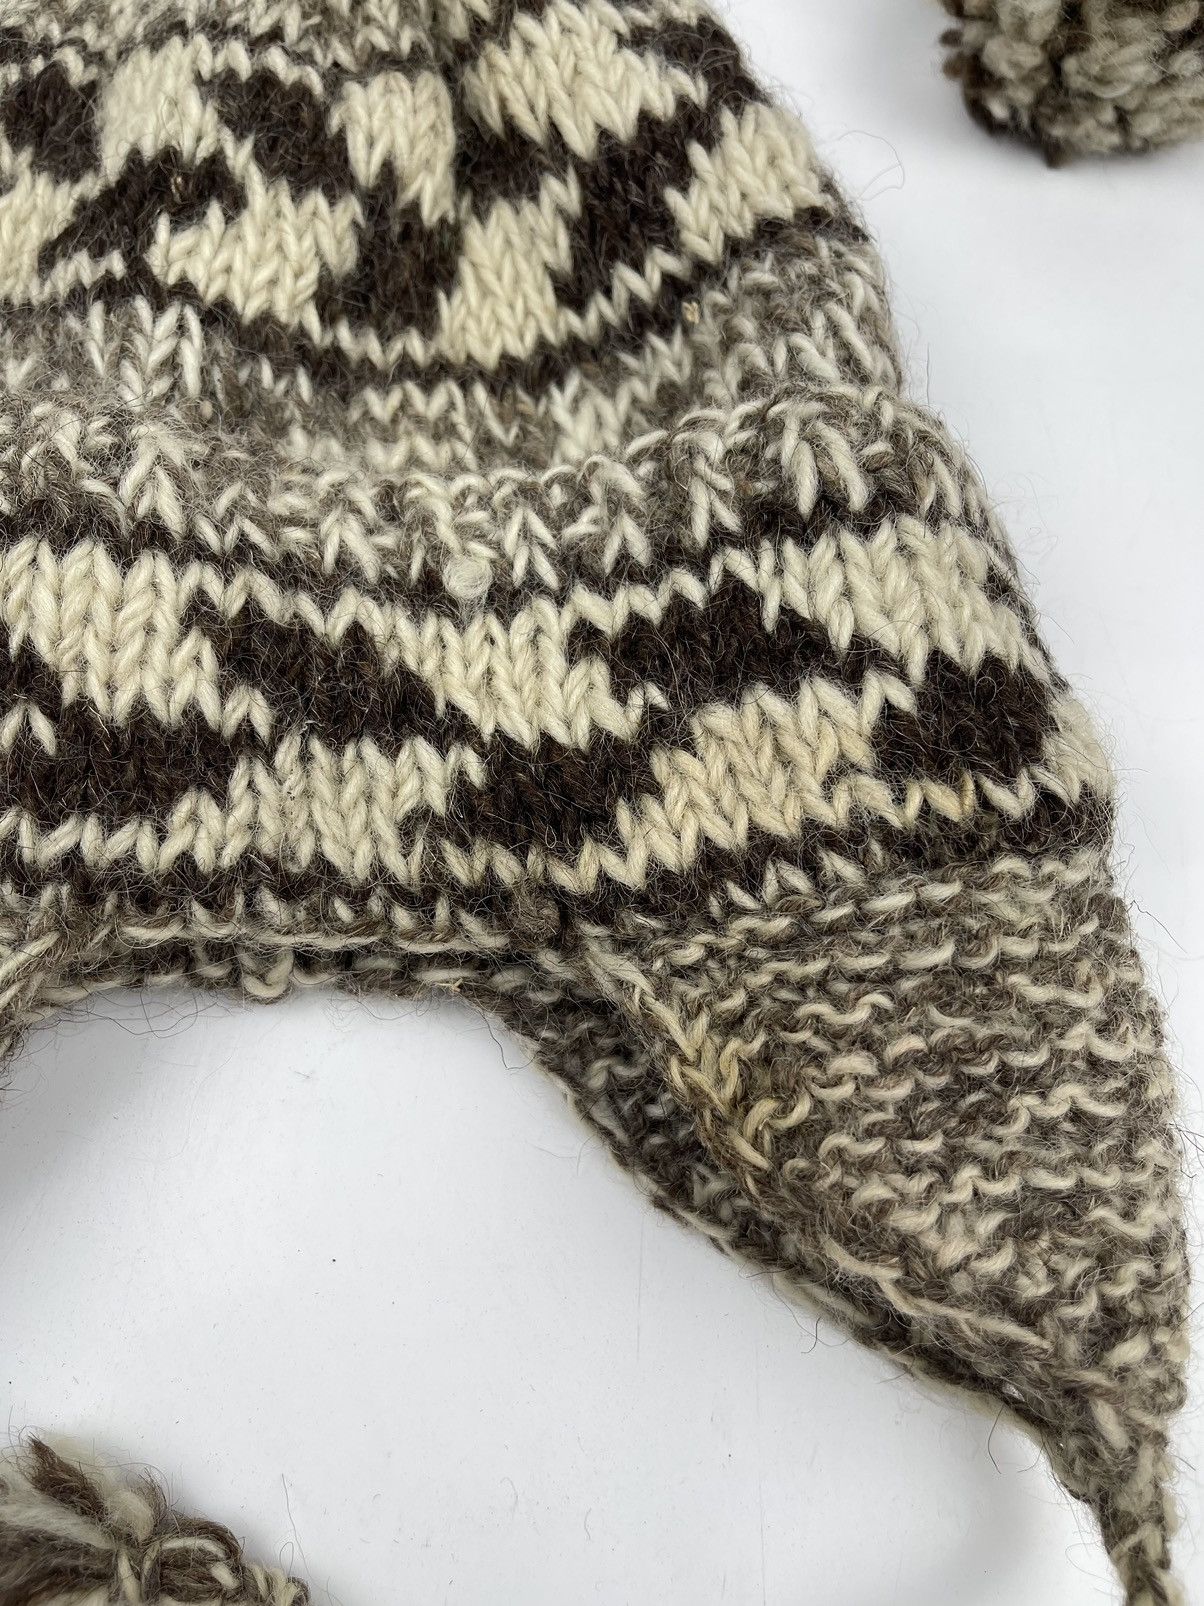 Very Rare - rare pattern custom made winter hat beanie hat tc16 - 4